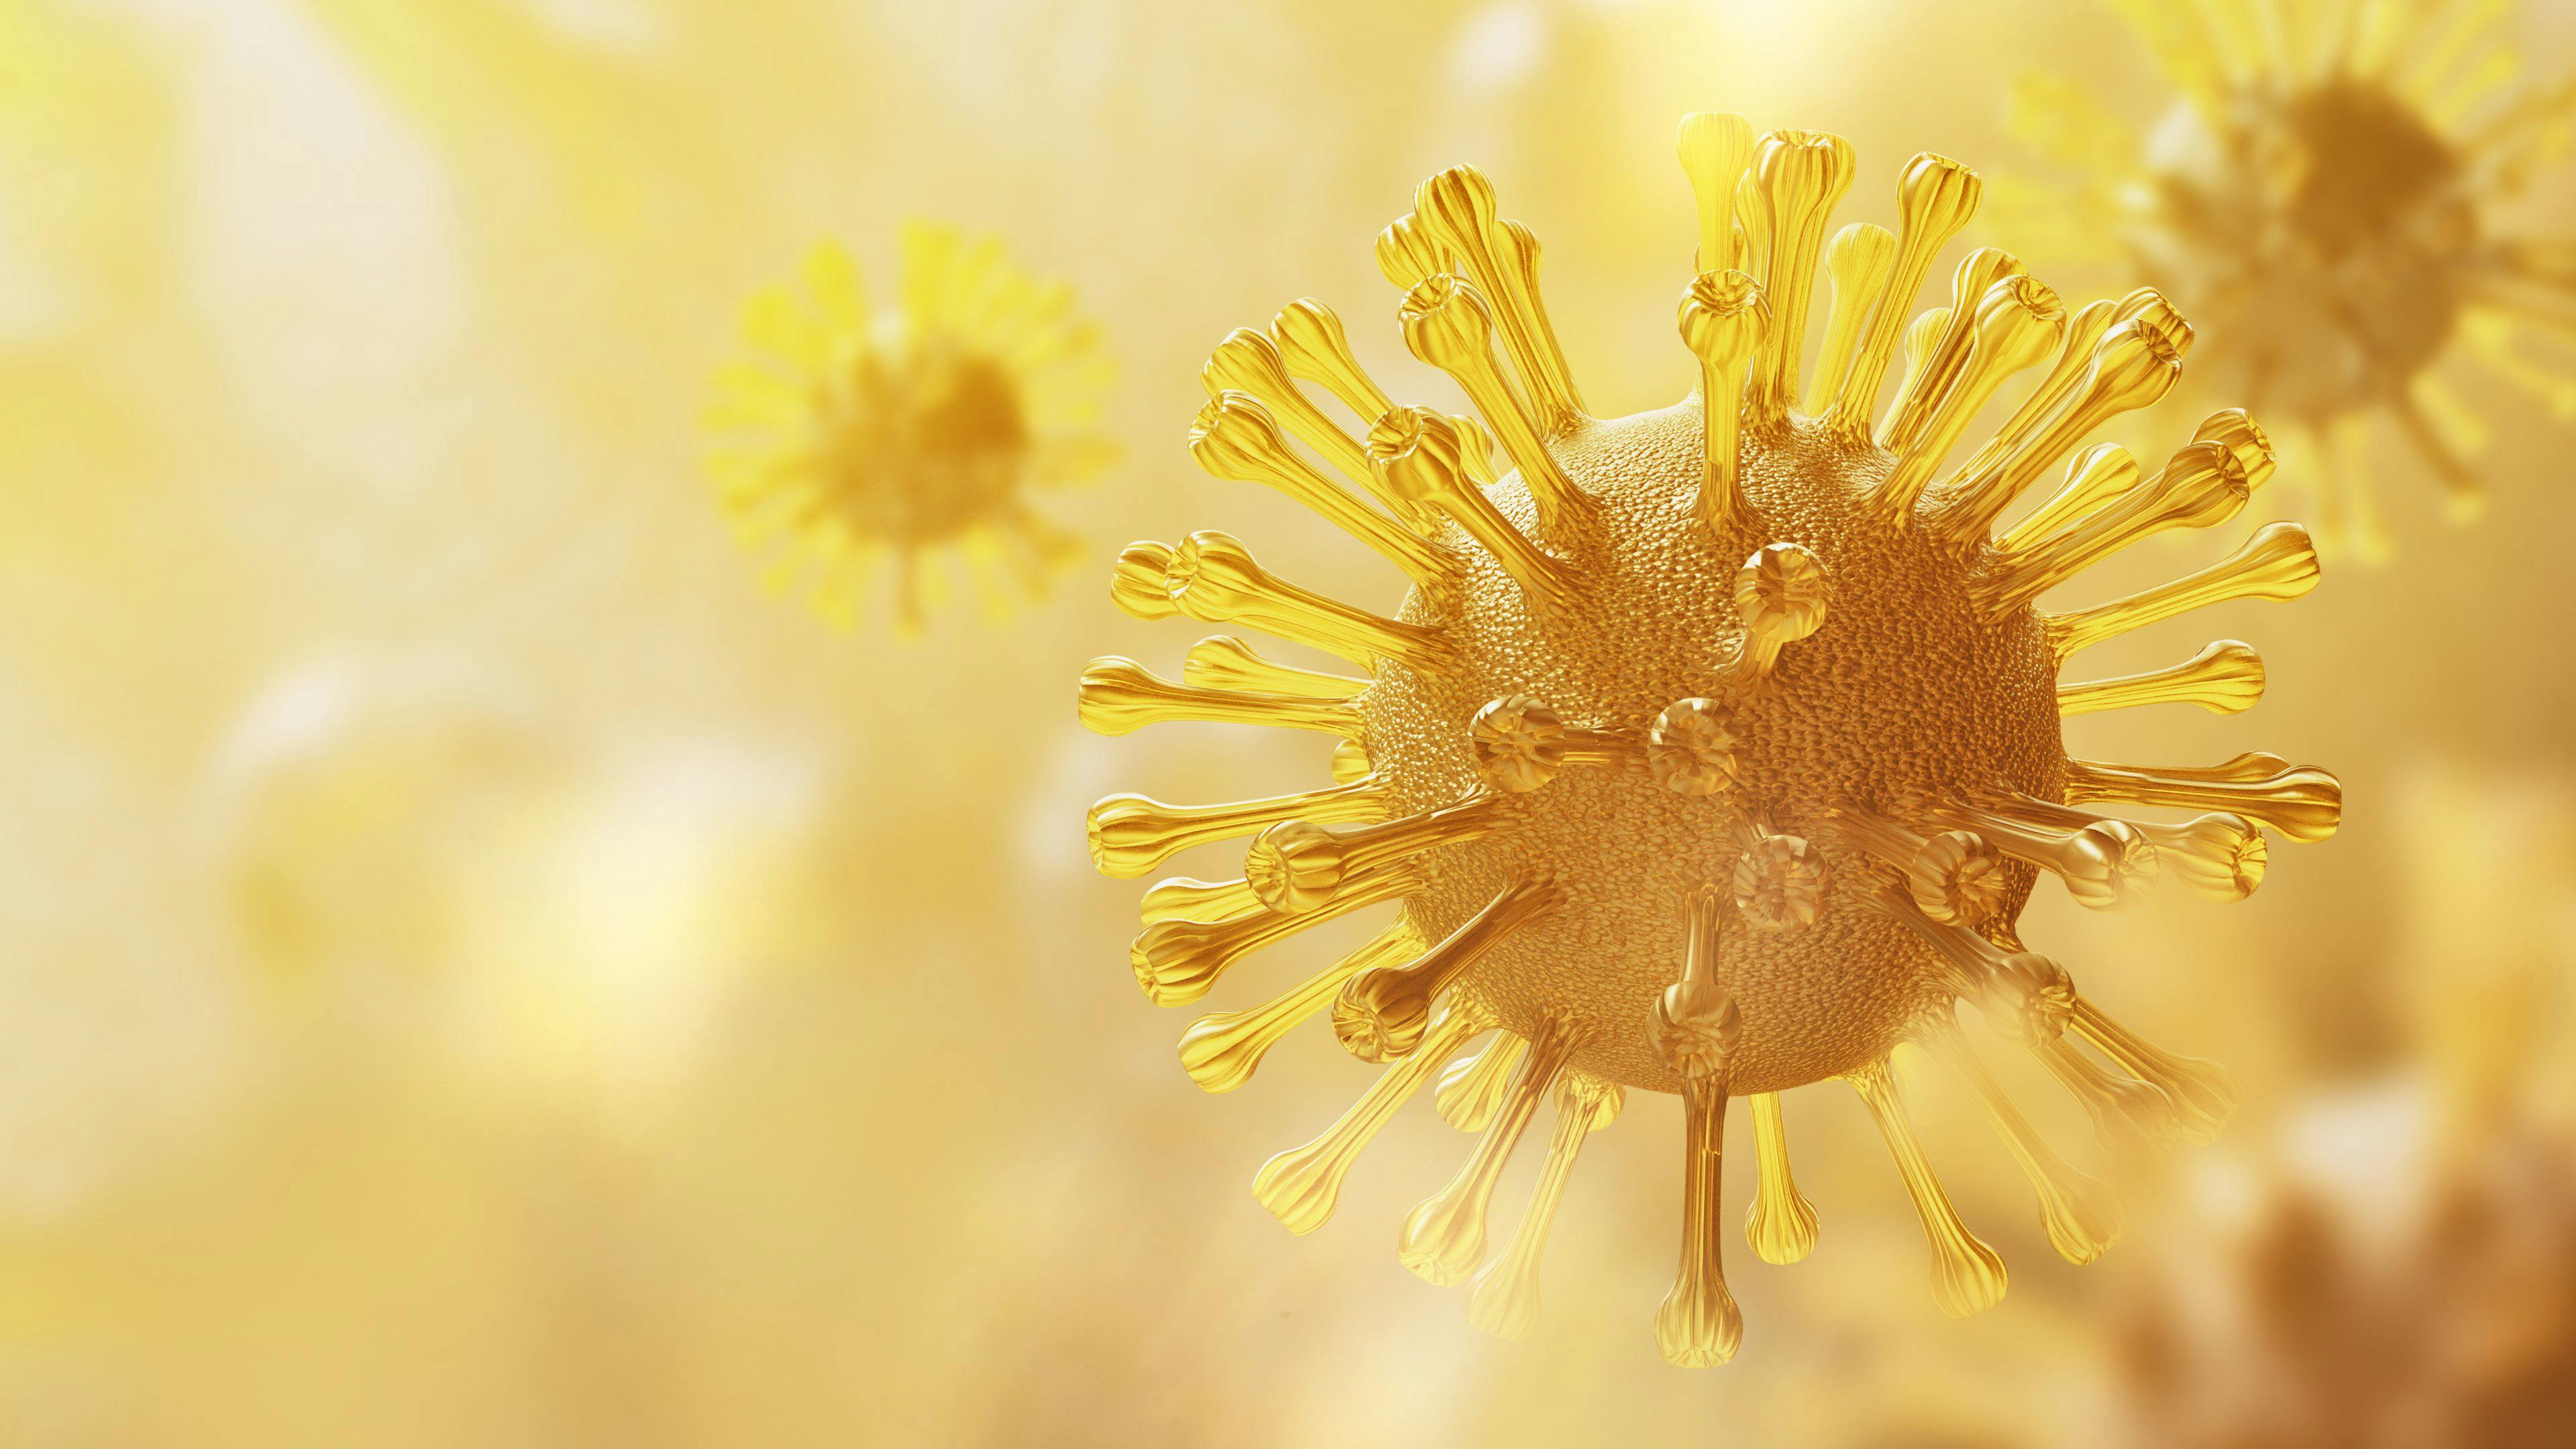 New Study Reveals Fresh Honey’s Antibacterial Power Against Respiratory Pathogens